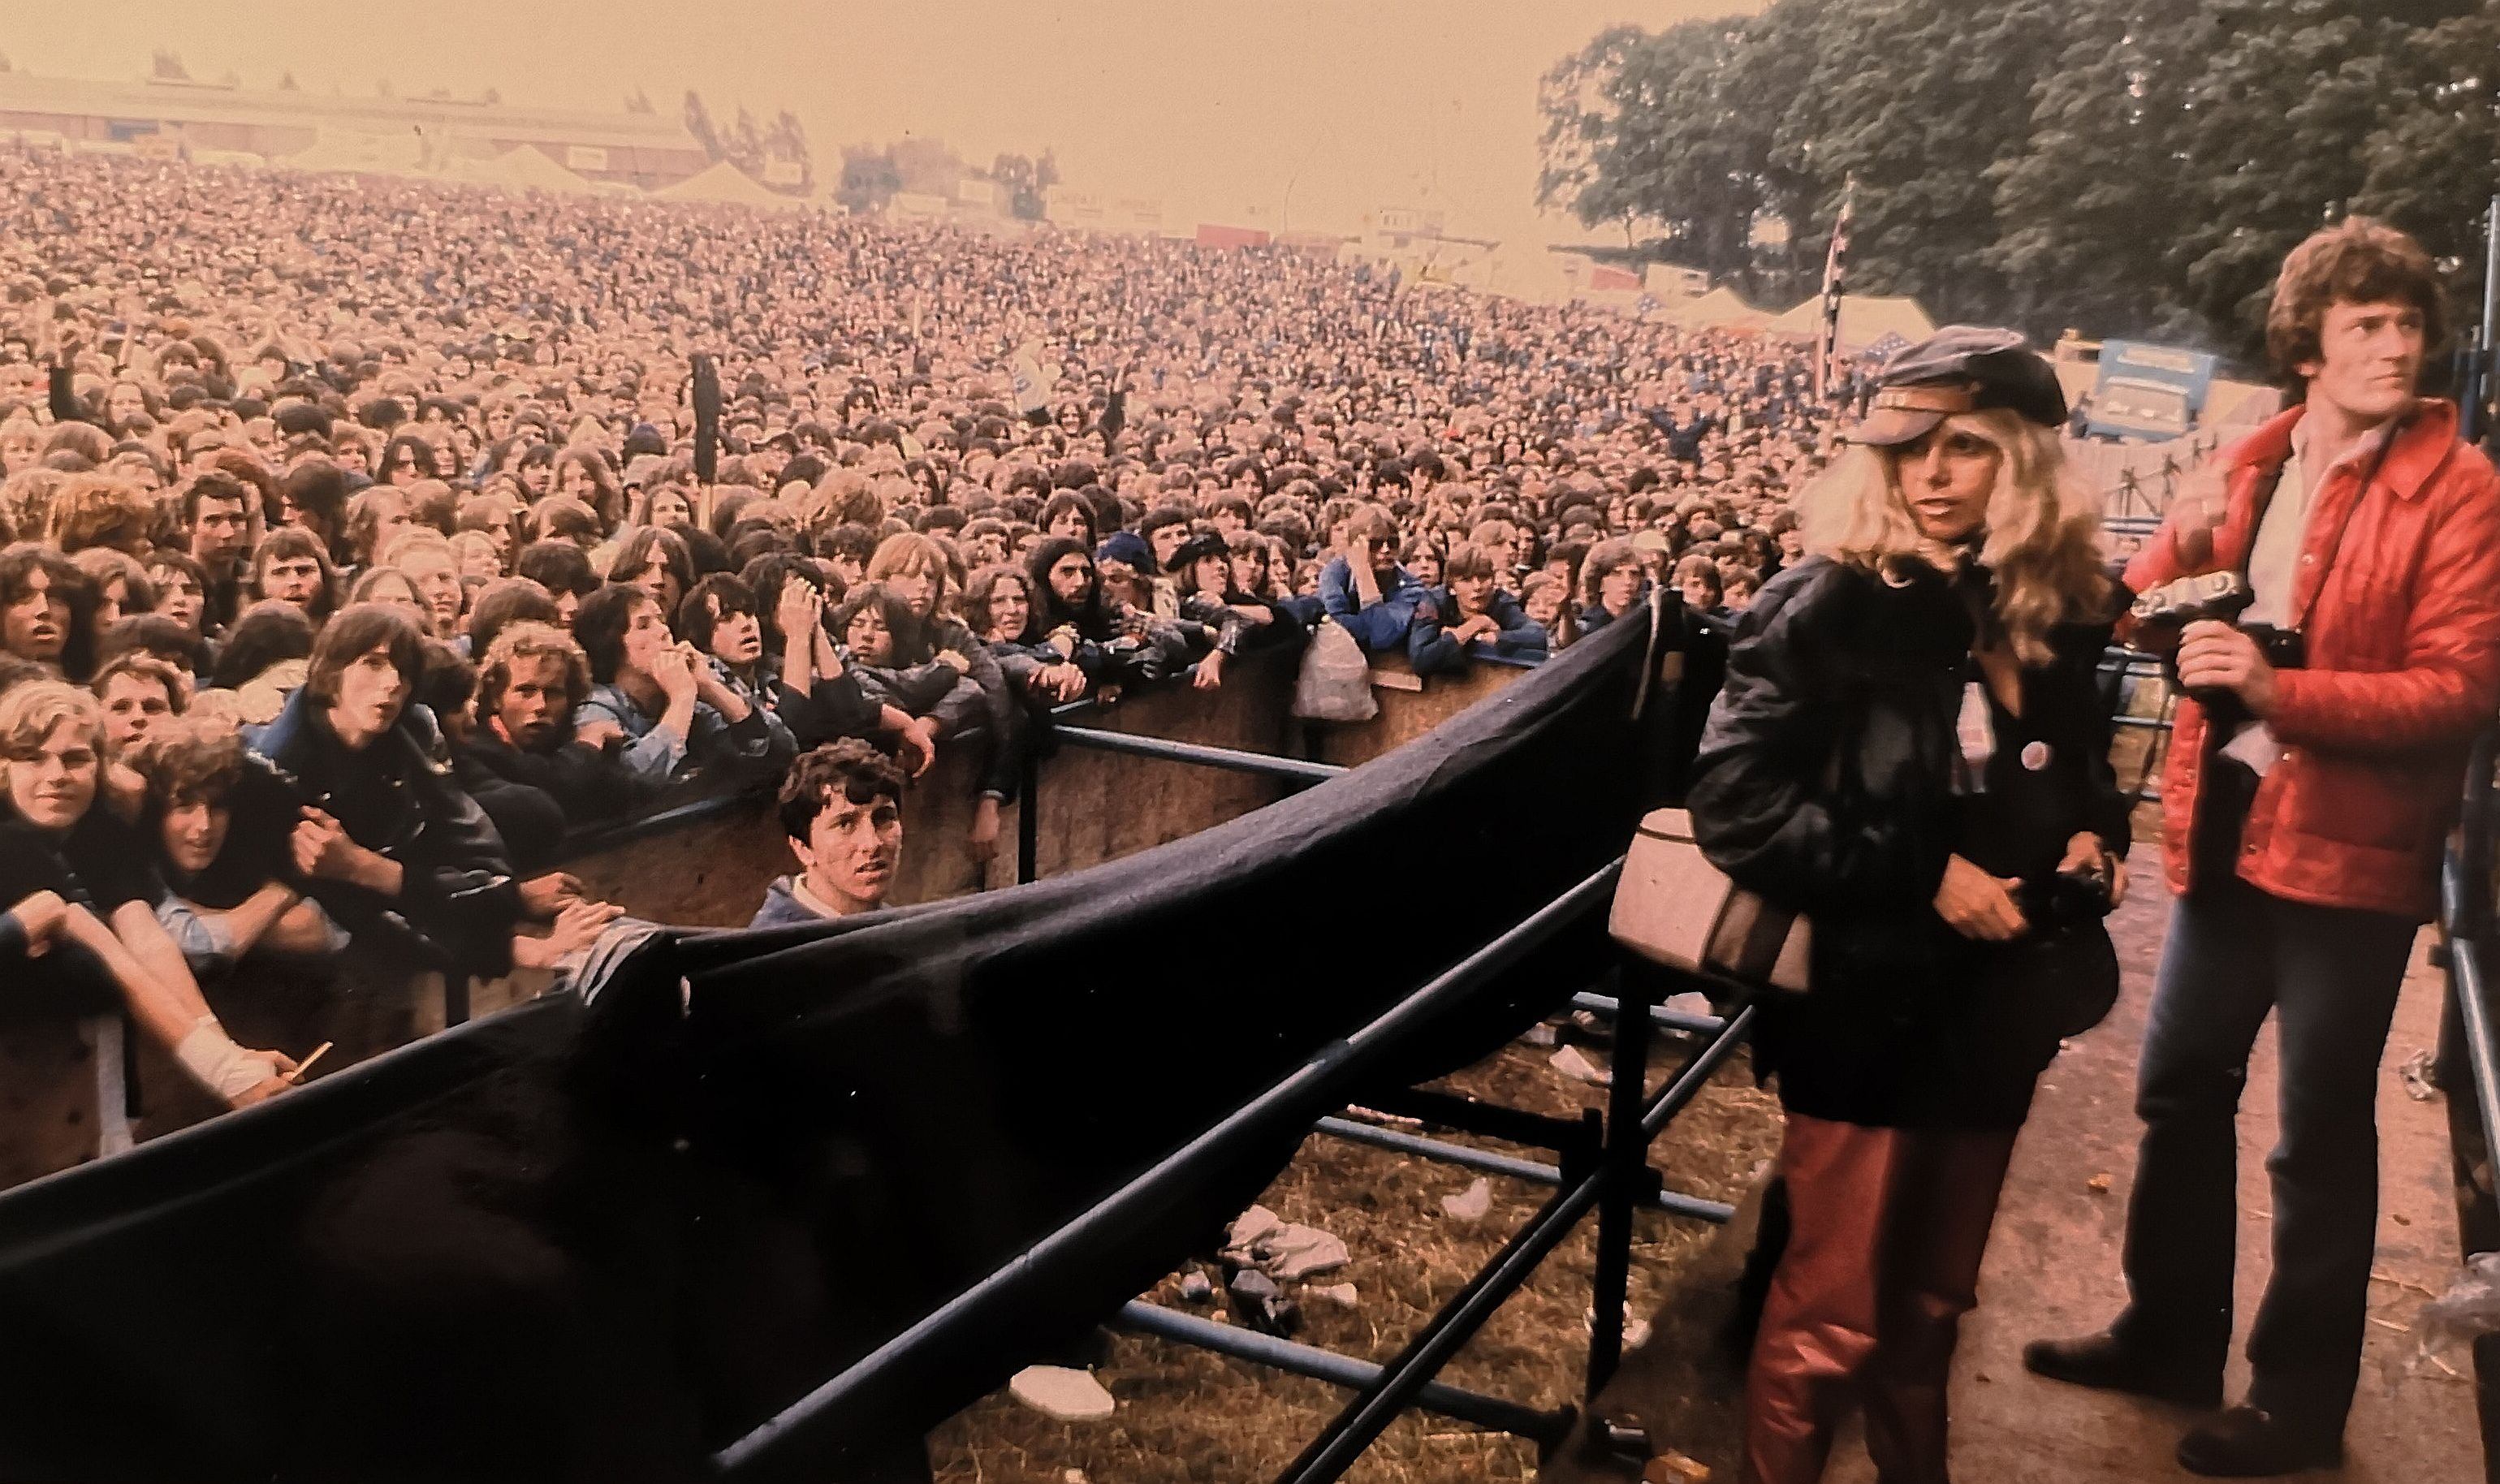 Bertha, con gorra, en el foso de fotógrafos del festival  'Monsters of Rock' de Donington (Inglaterra) en 1981. Aquella edición tocaron AC/DC, Whitesnake, Slade o Blue Öyster Cult.